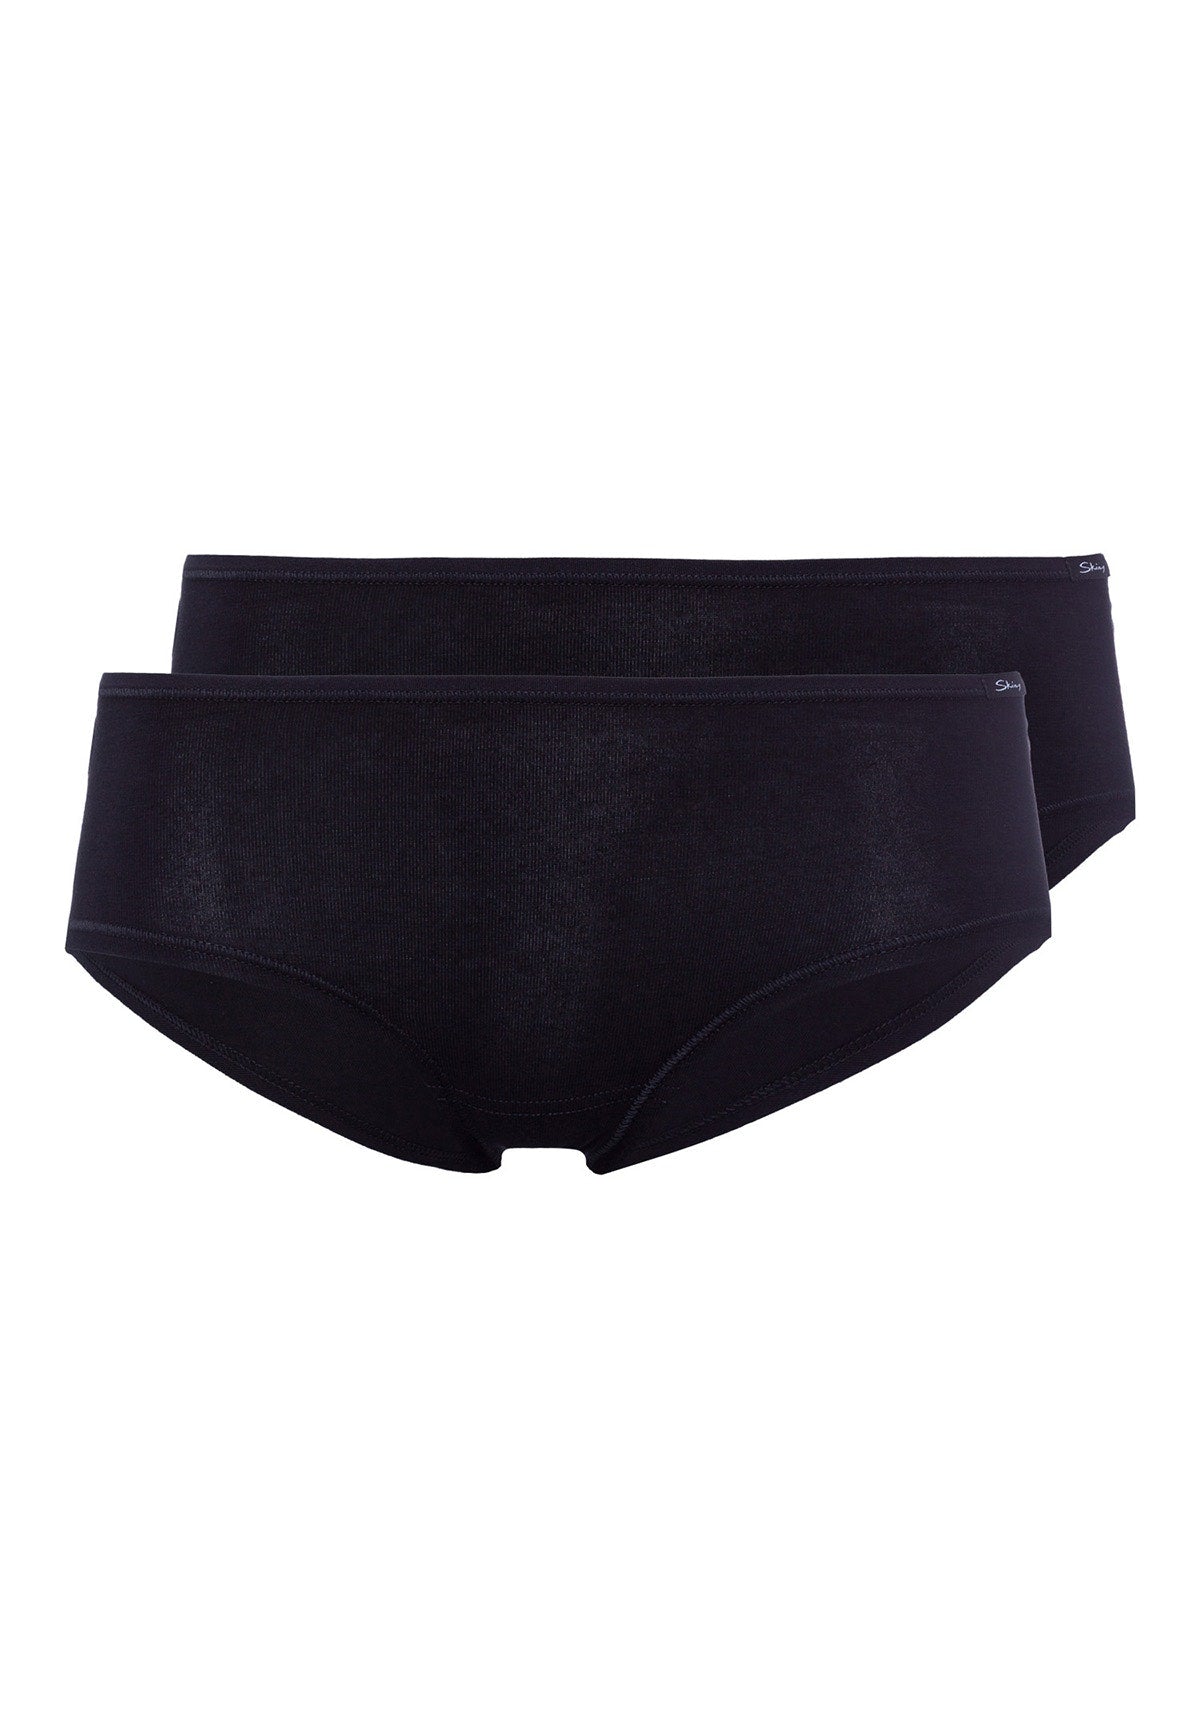 Skiny Damen Panty 2er Pack Advantage Cotton (Black)